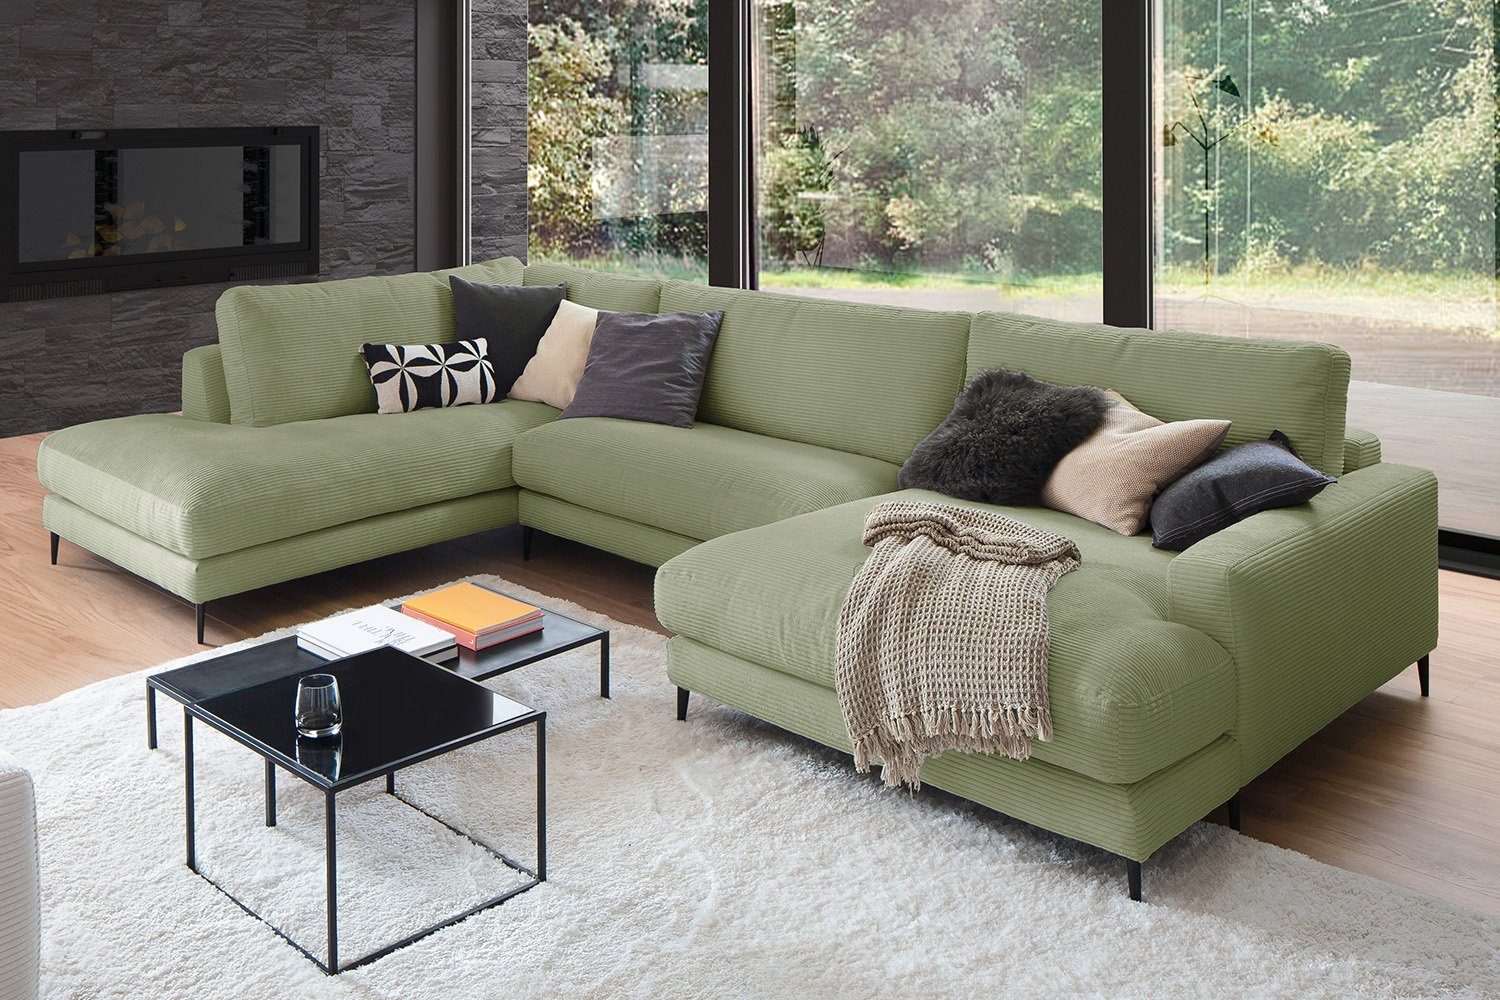 KAWOLA Wohnlandschaft CARA, Sofa rechts versch. U-Form od. olivgrün Cord, Longchair Farben links